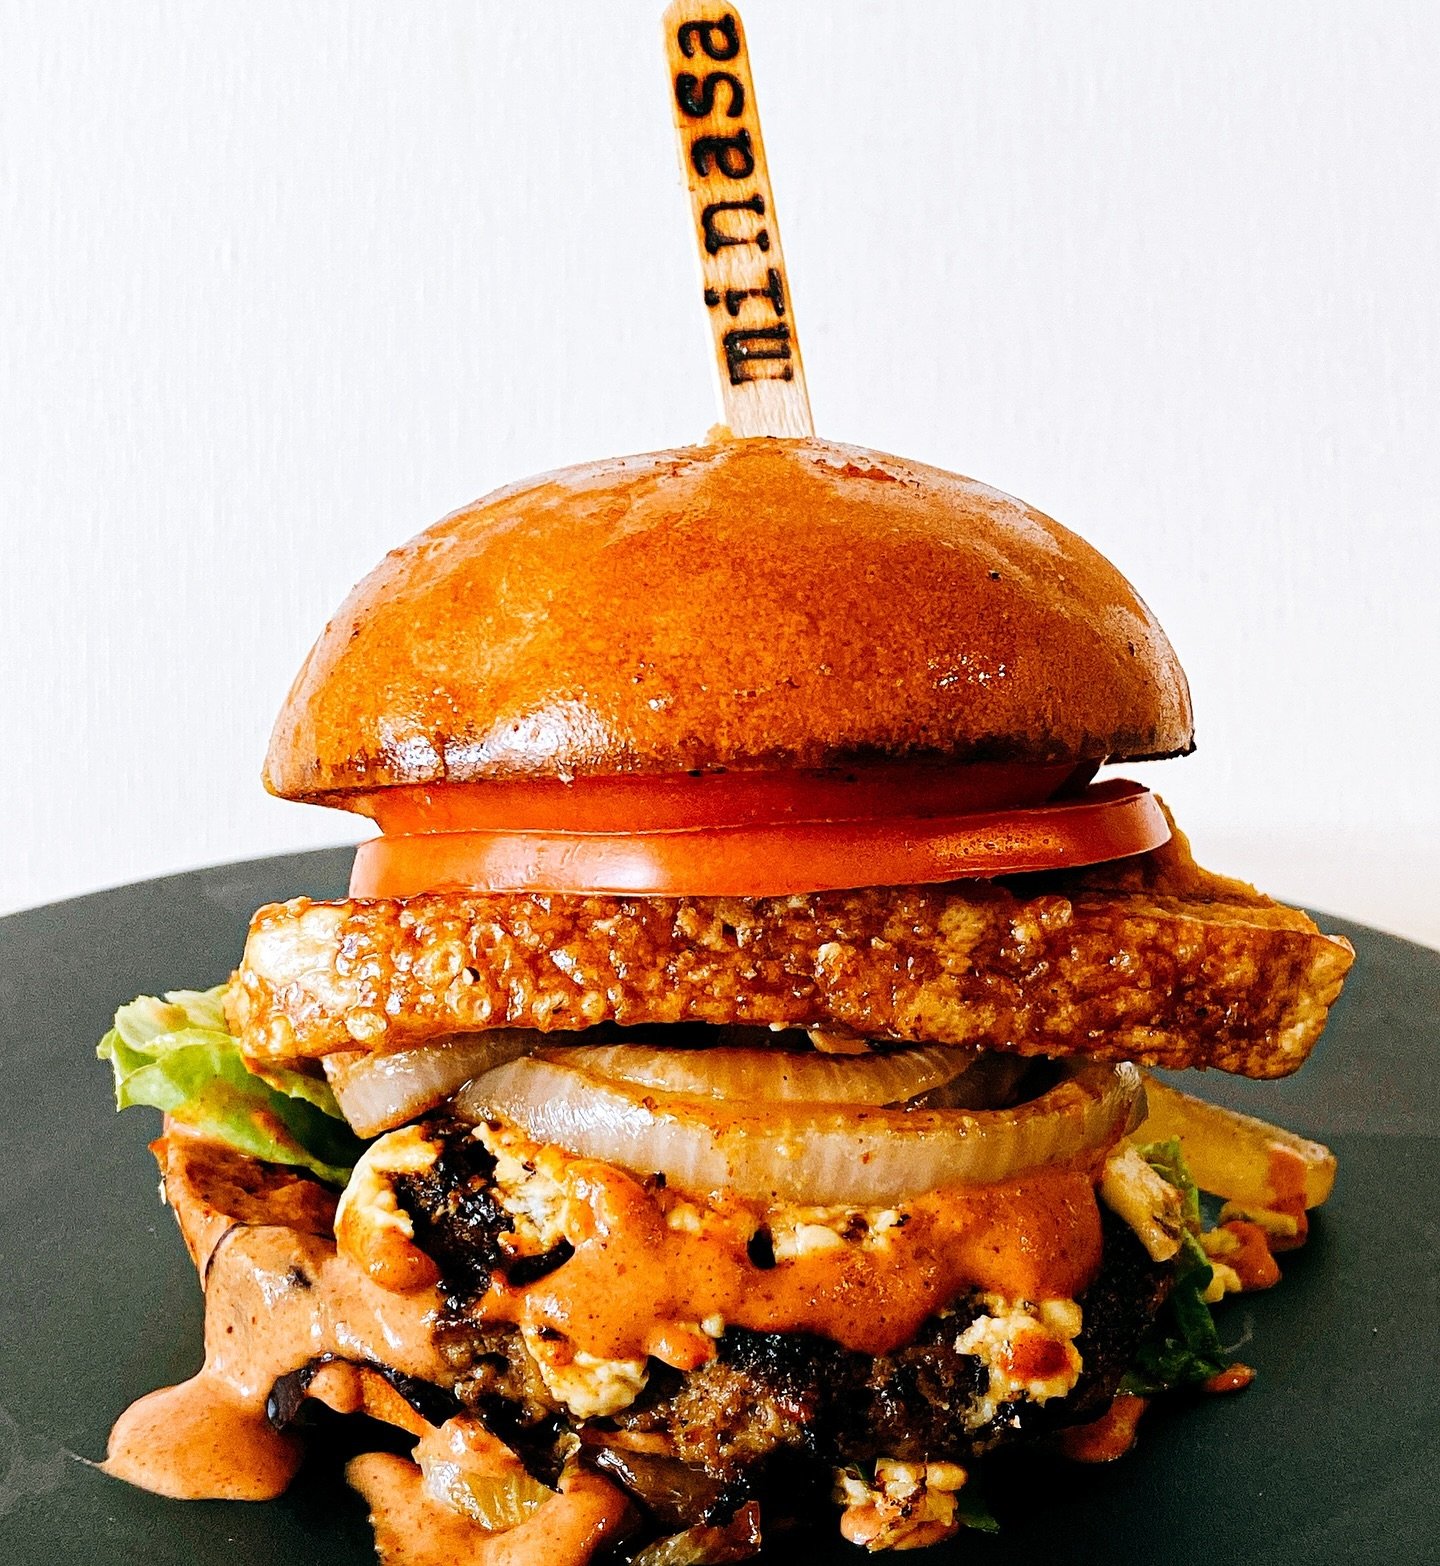 Eat Minasa - Lechon 🍔 Burger!!!
Coming soon!!!

#eatminasa #minasahawaiiclassic2019